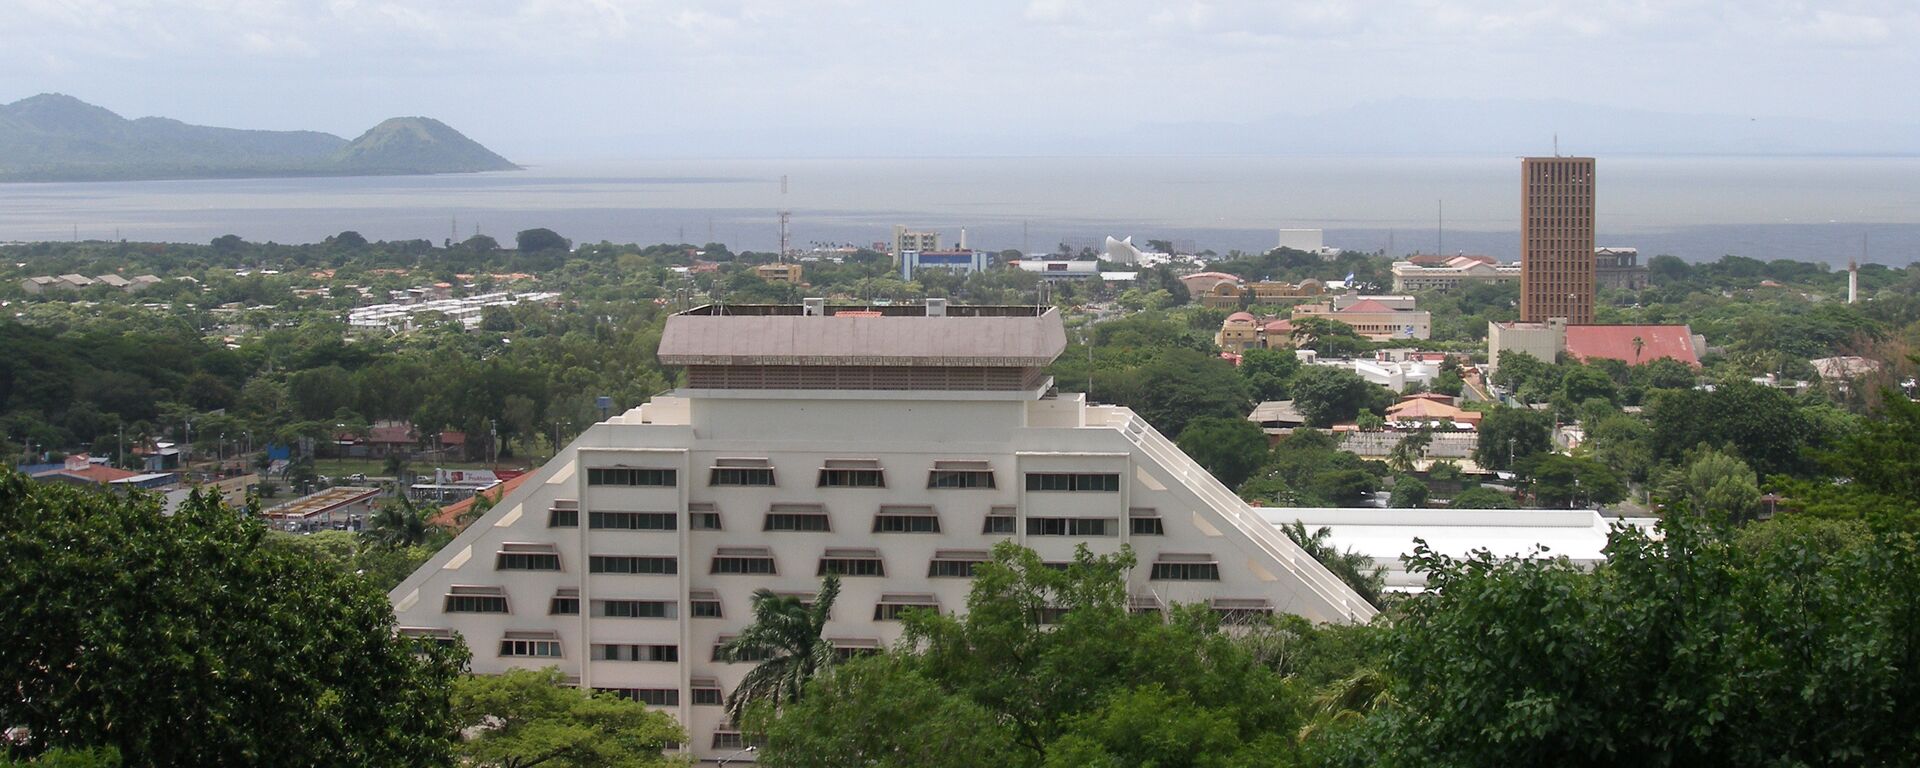 Capital de Nicaragua,  Managua - Sputnik Mundo, 1920, 11.12.2021